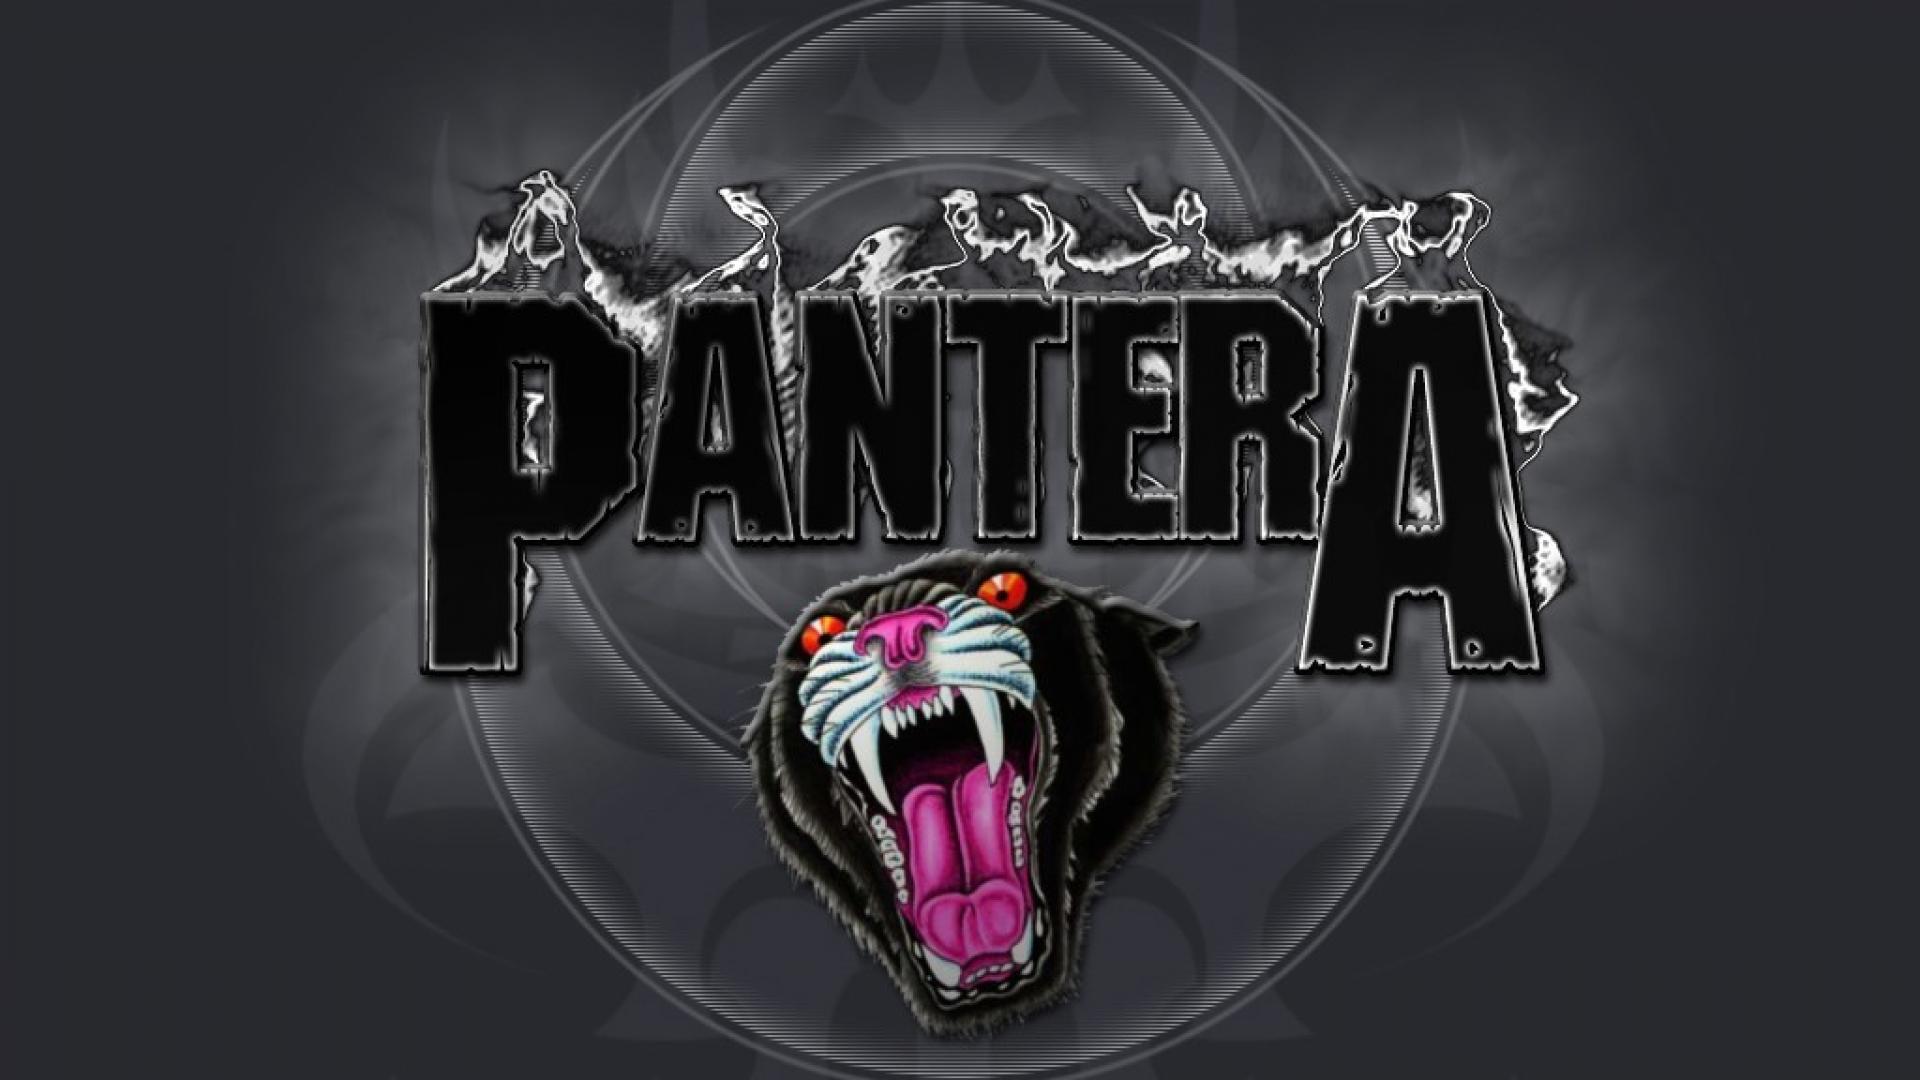 Heavy metal bands pantera band wallpaper 102327